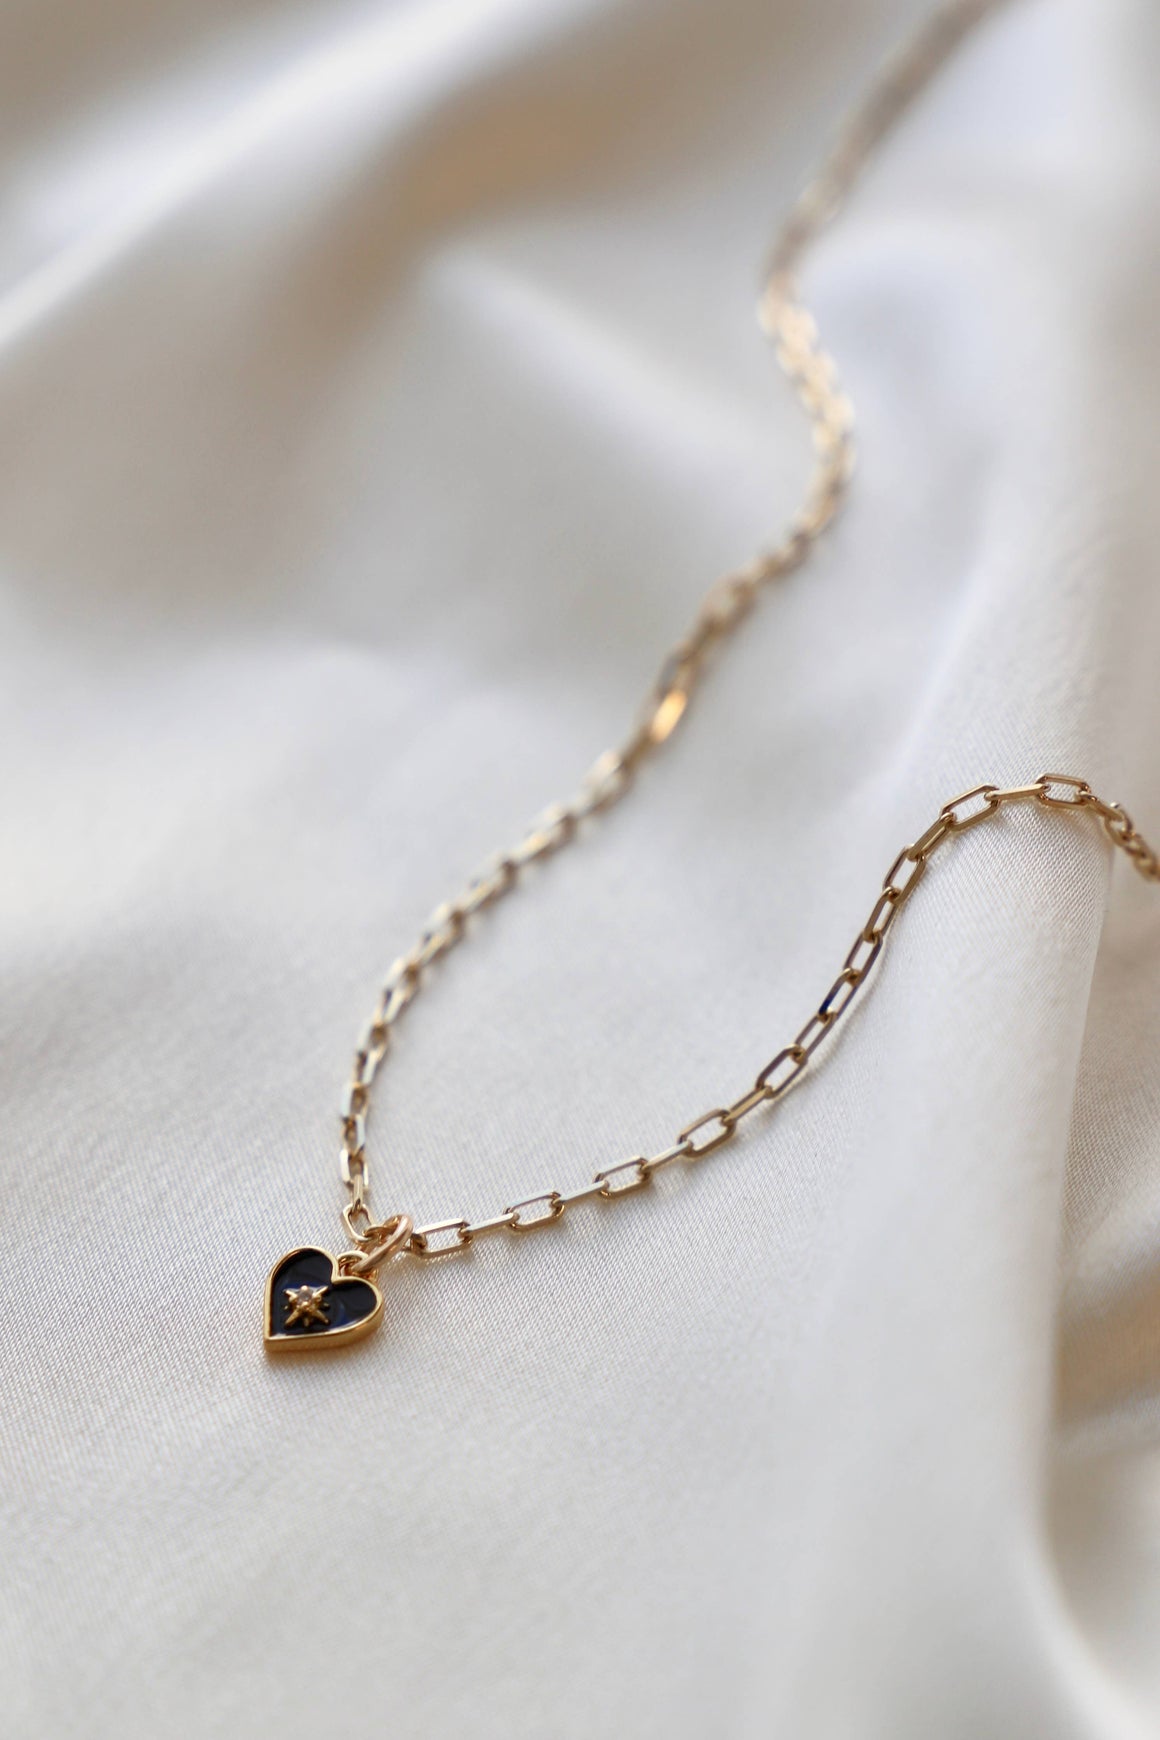 Black Enamel Heart Necklace